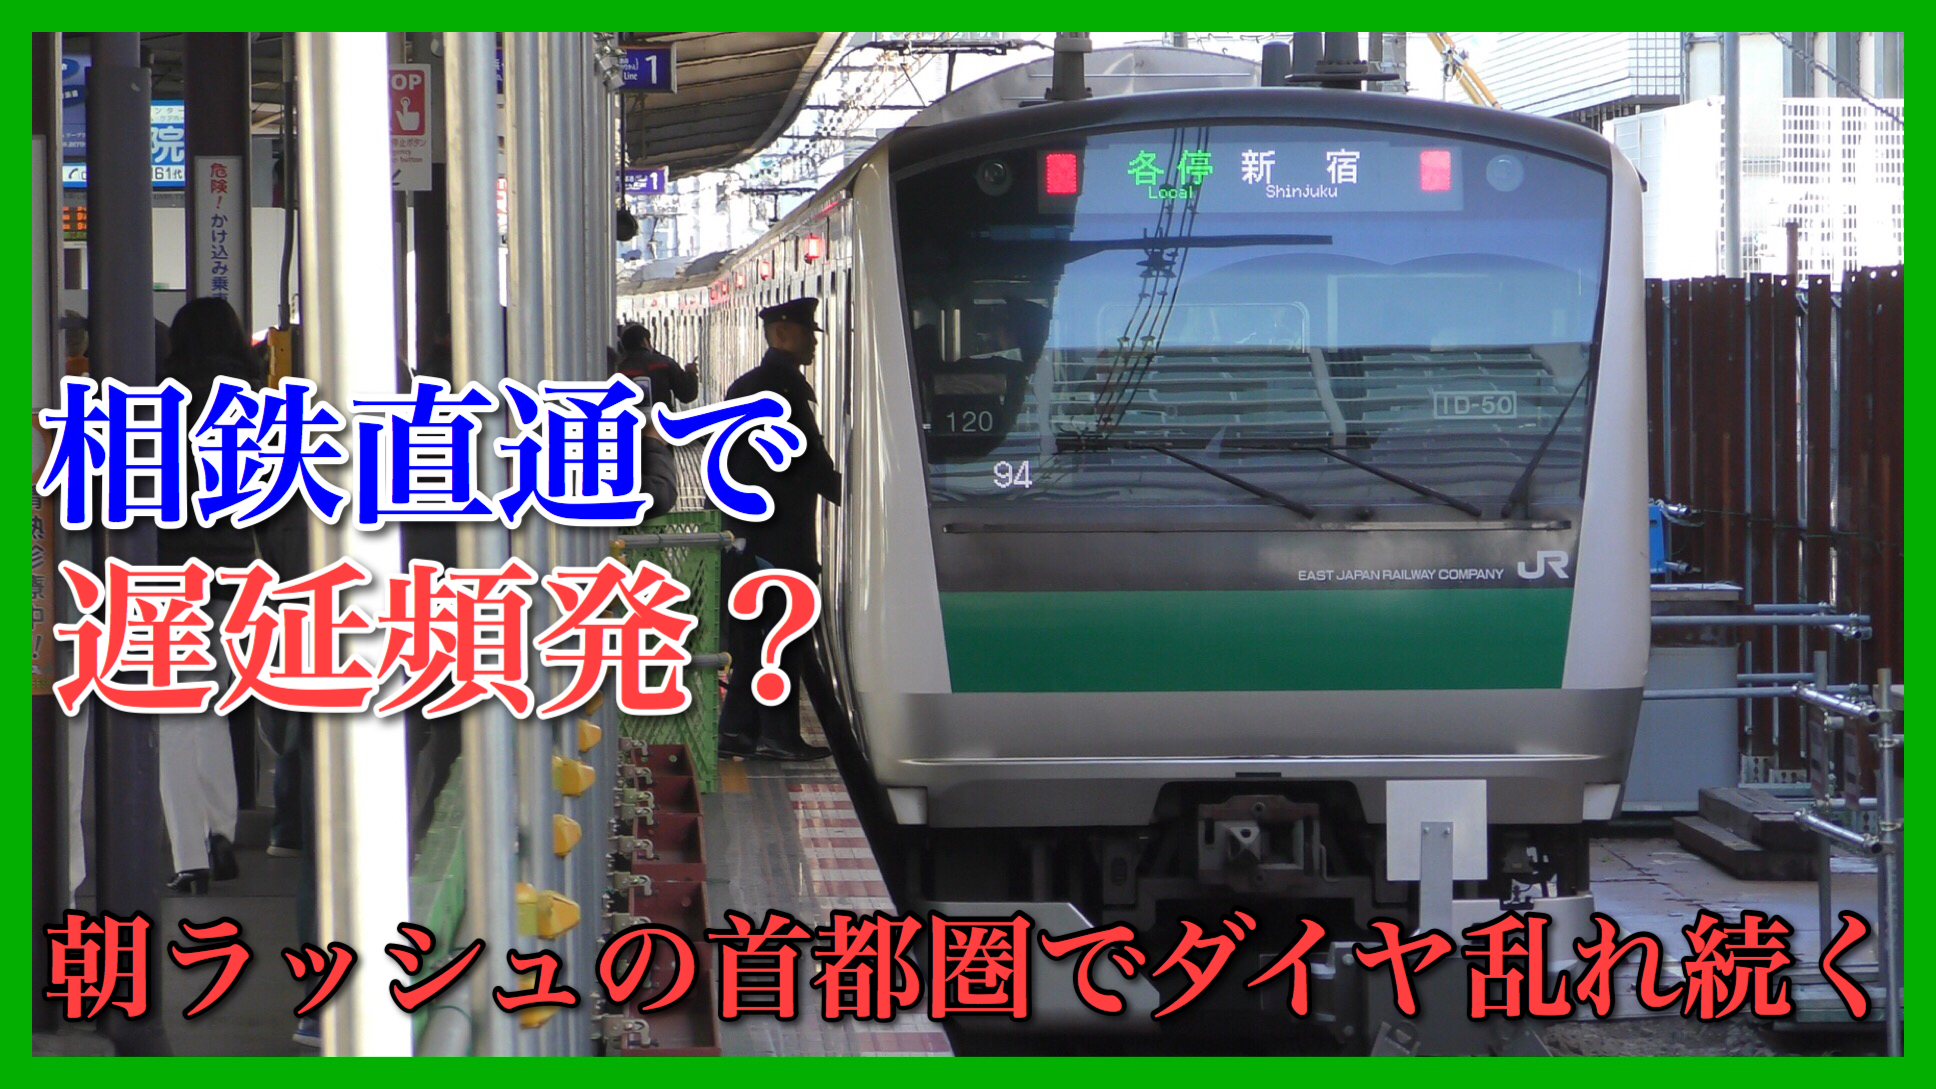 相鉄 埼京 線 線 相鉄線とJRの相互直通運転で、激混みの埼京線が減便。さいたま市民に広がる怒り «